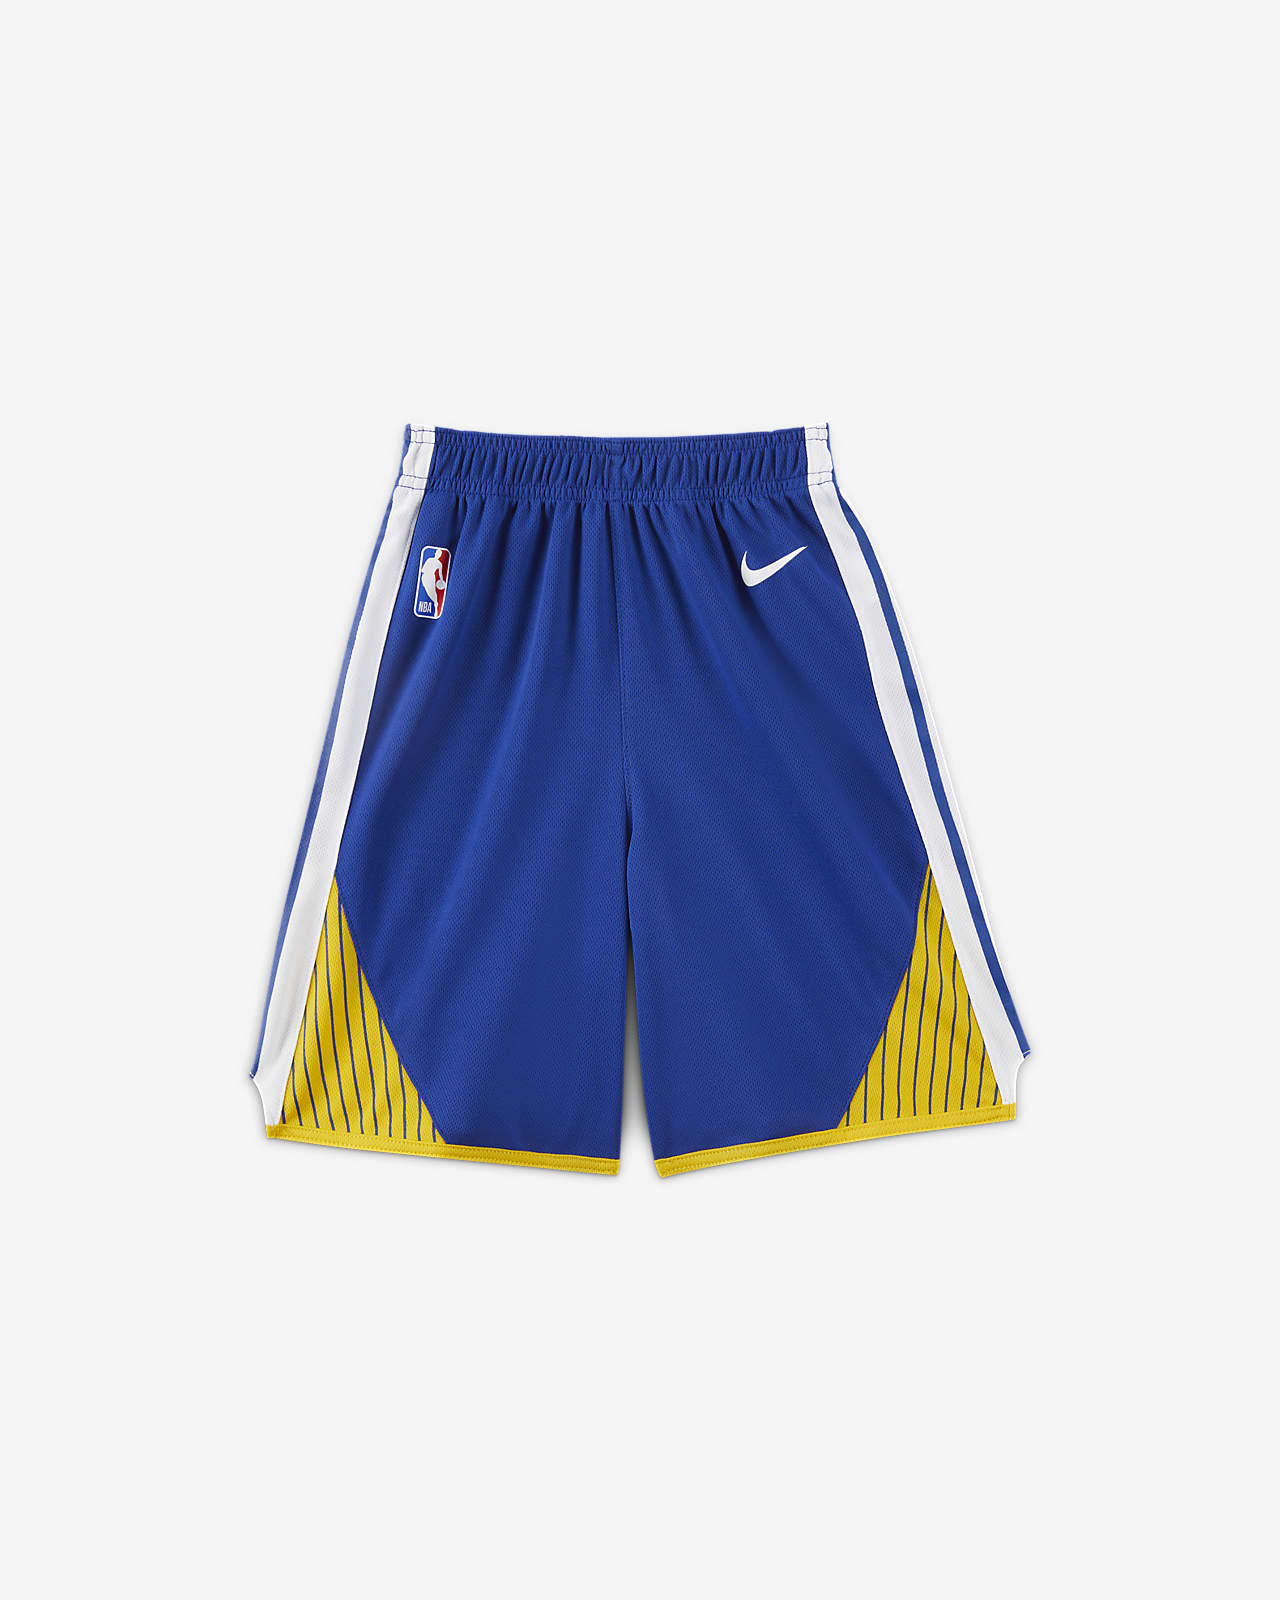 金州勇士队 Icon Edition Nike NBA 幼童短裤